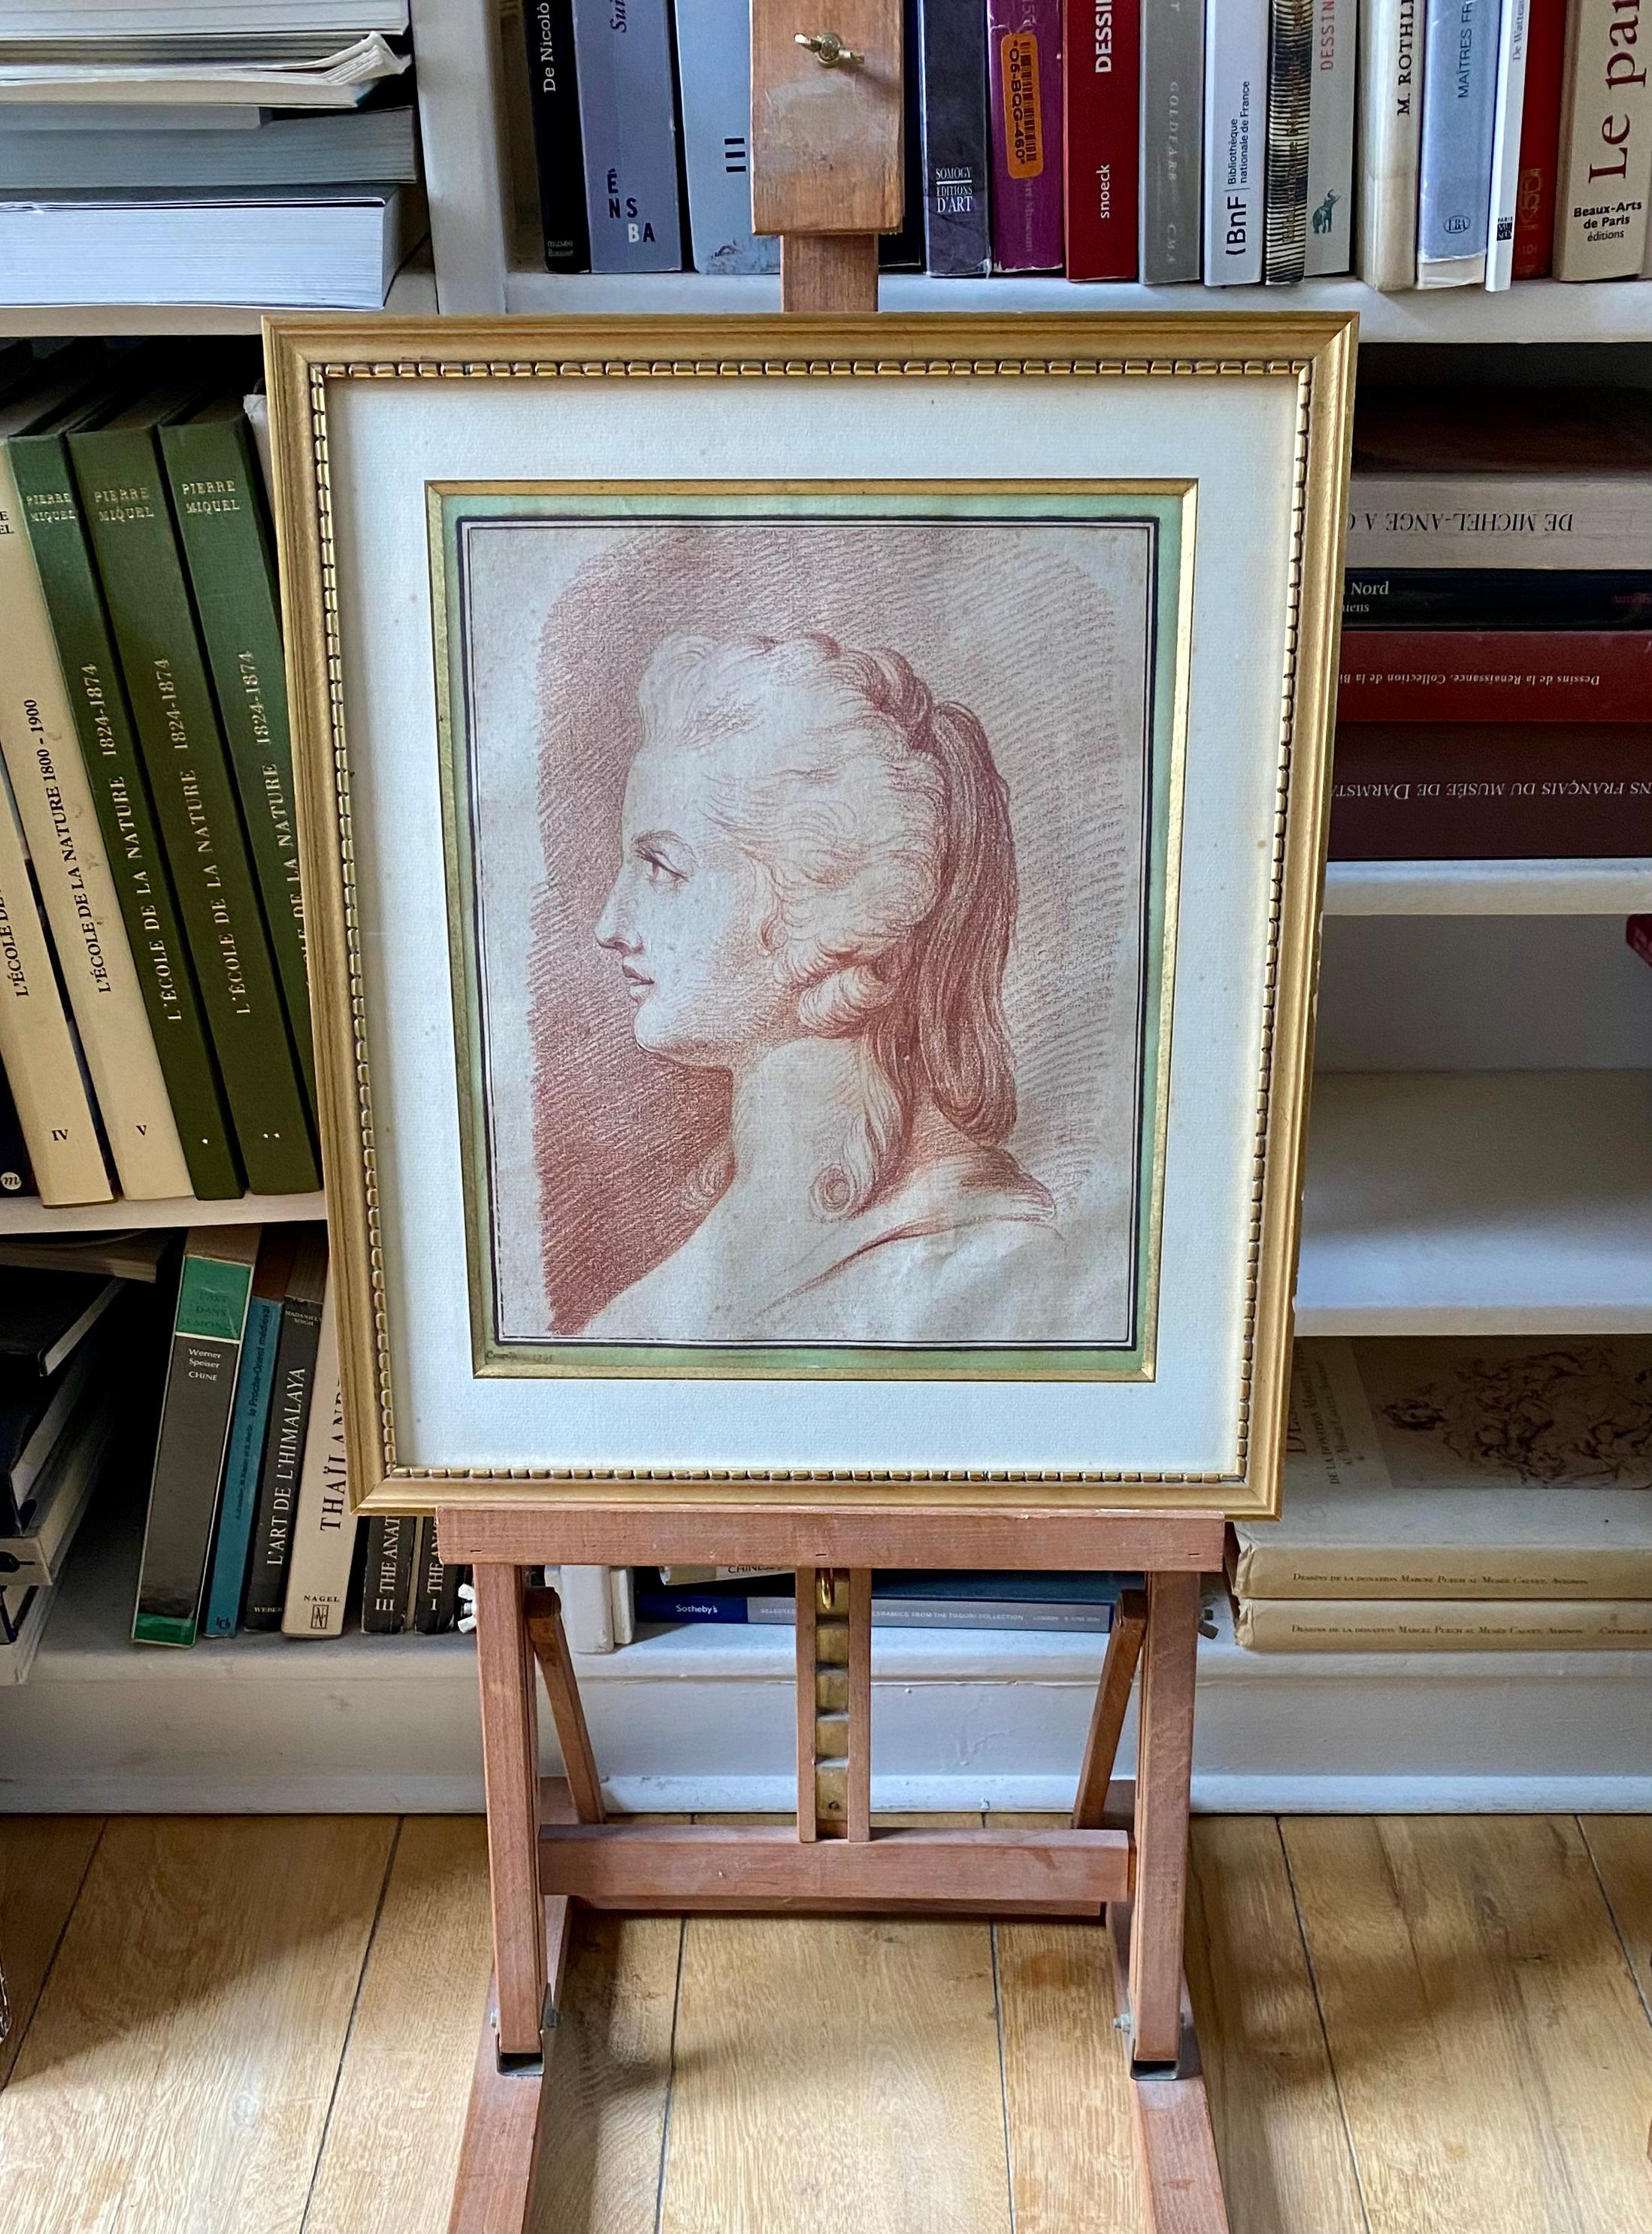 Nicolas-André COURTOIS
Paris 1734-1806

Büste einer Frau im Profil
1791
Sanguinisch
Signiert und datiert unten links auf dem Originalpassepartout
43,5 x 37 cm gerahmt
19 x 25 cm
